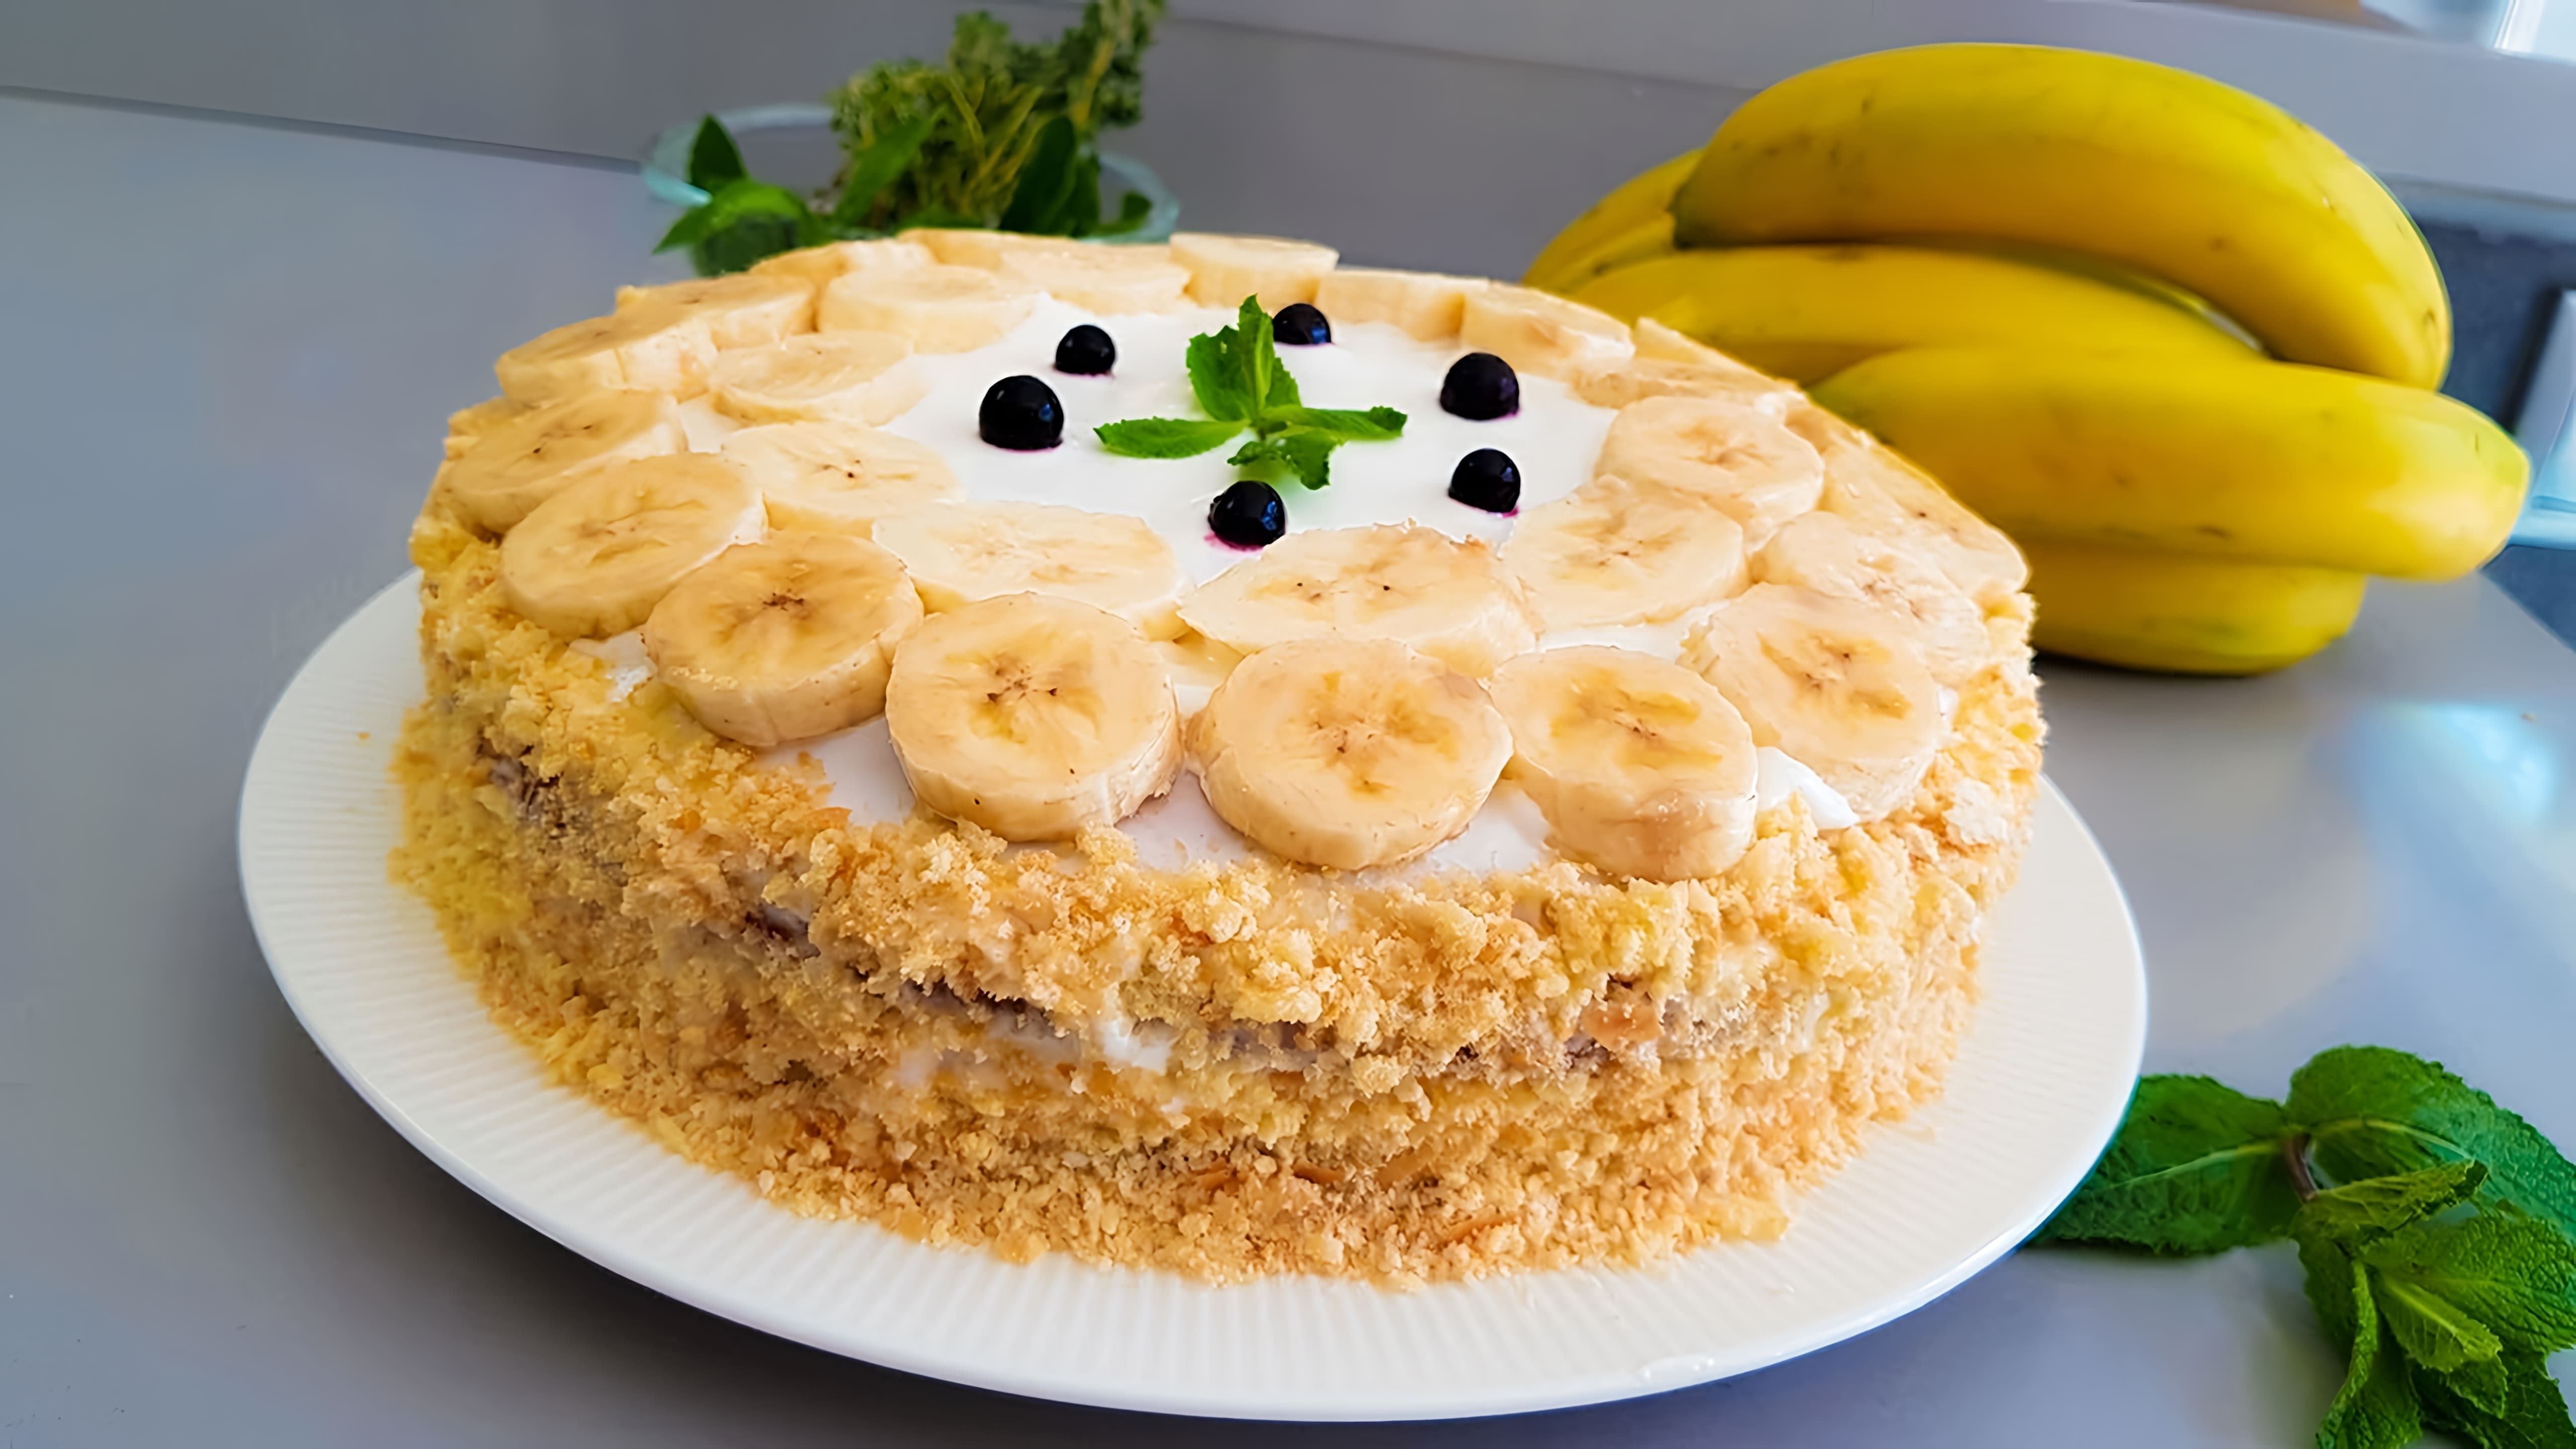 В этом видео демонстрируется процесс приготовления бананового торта